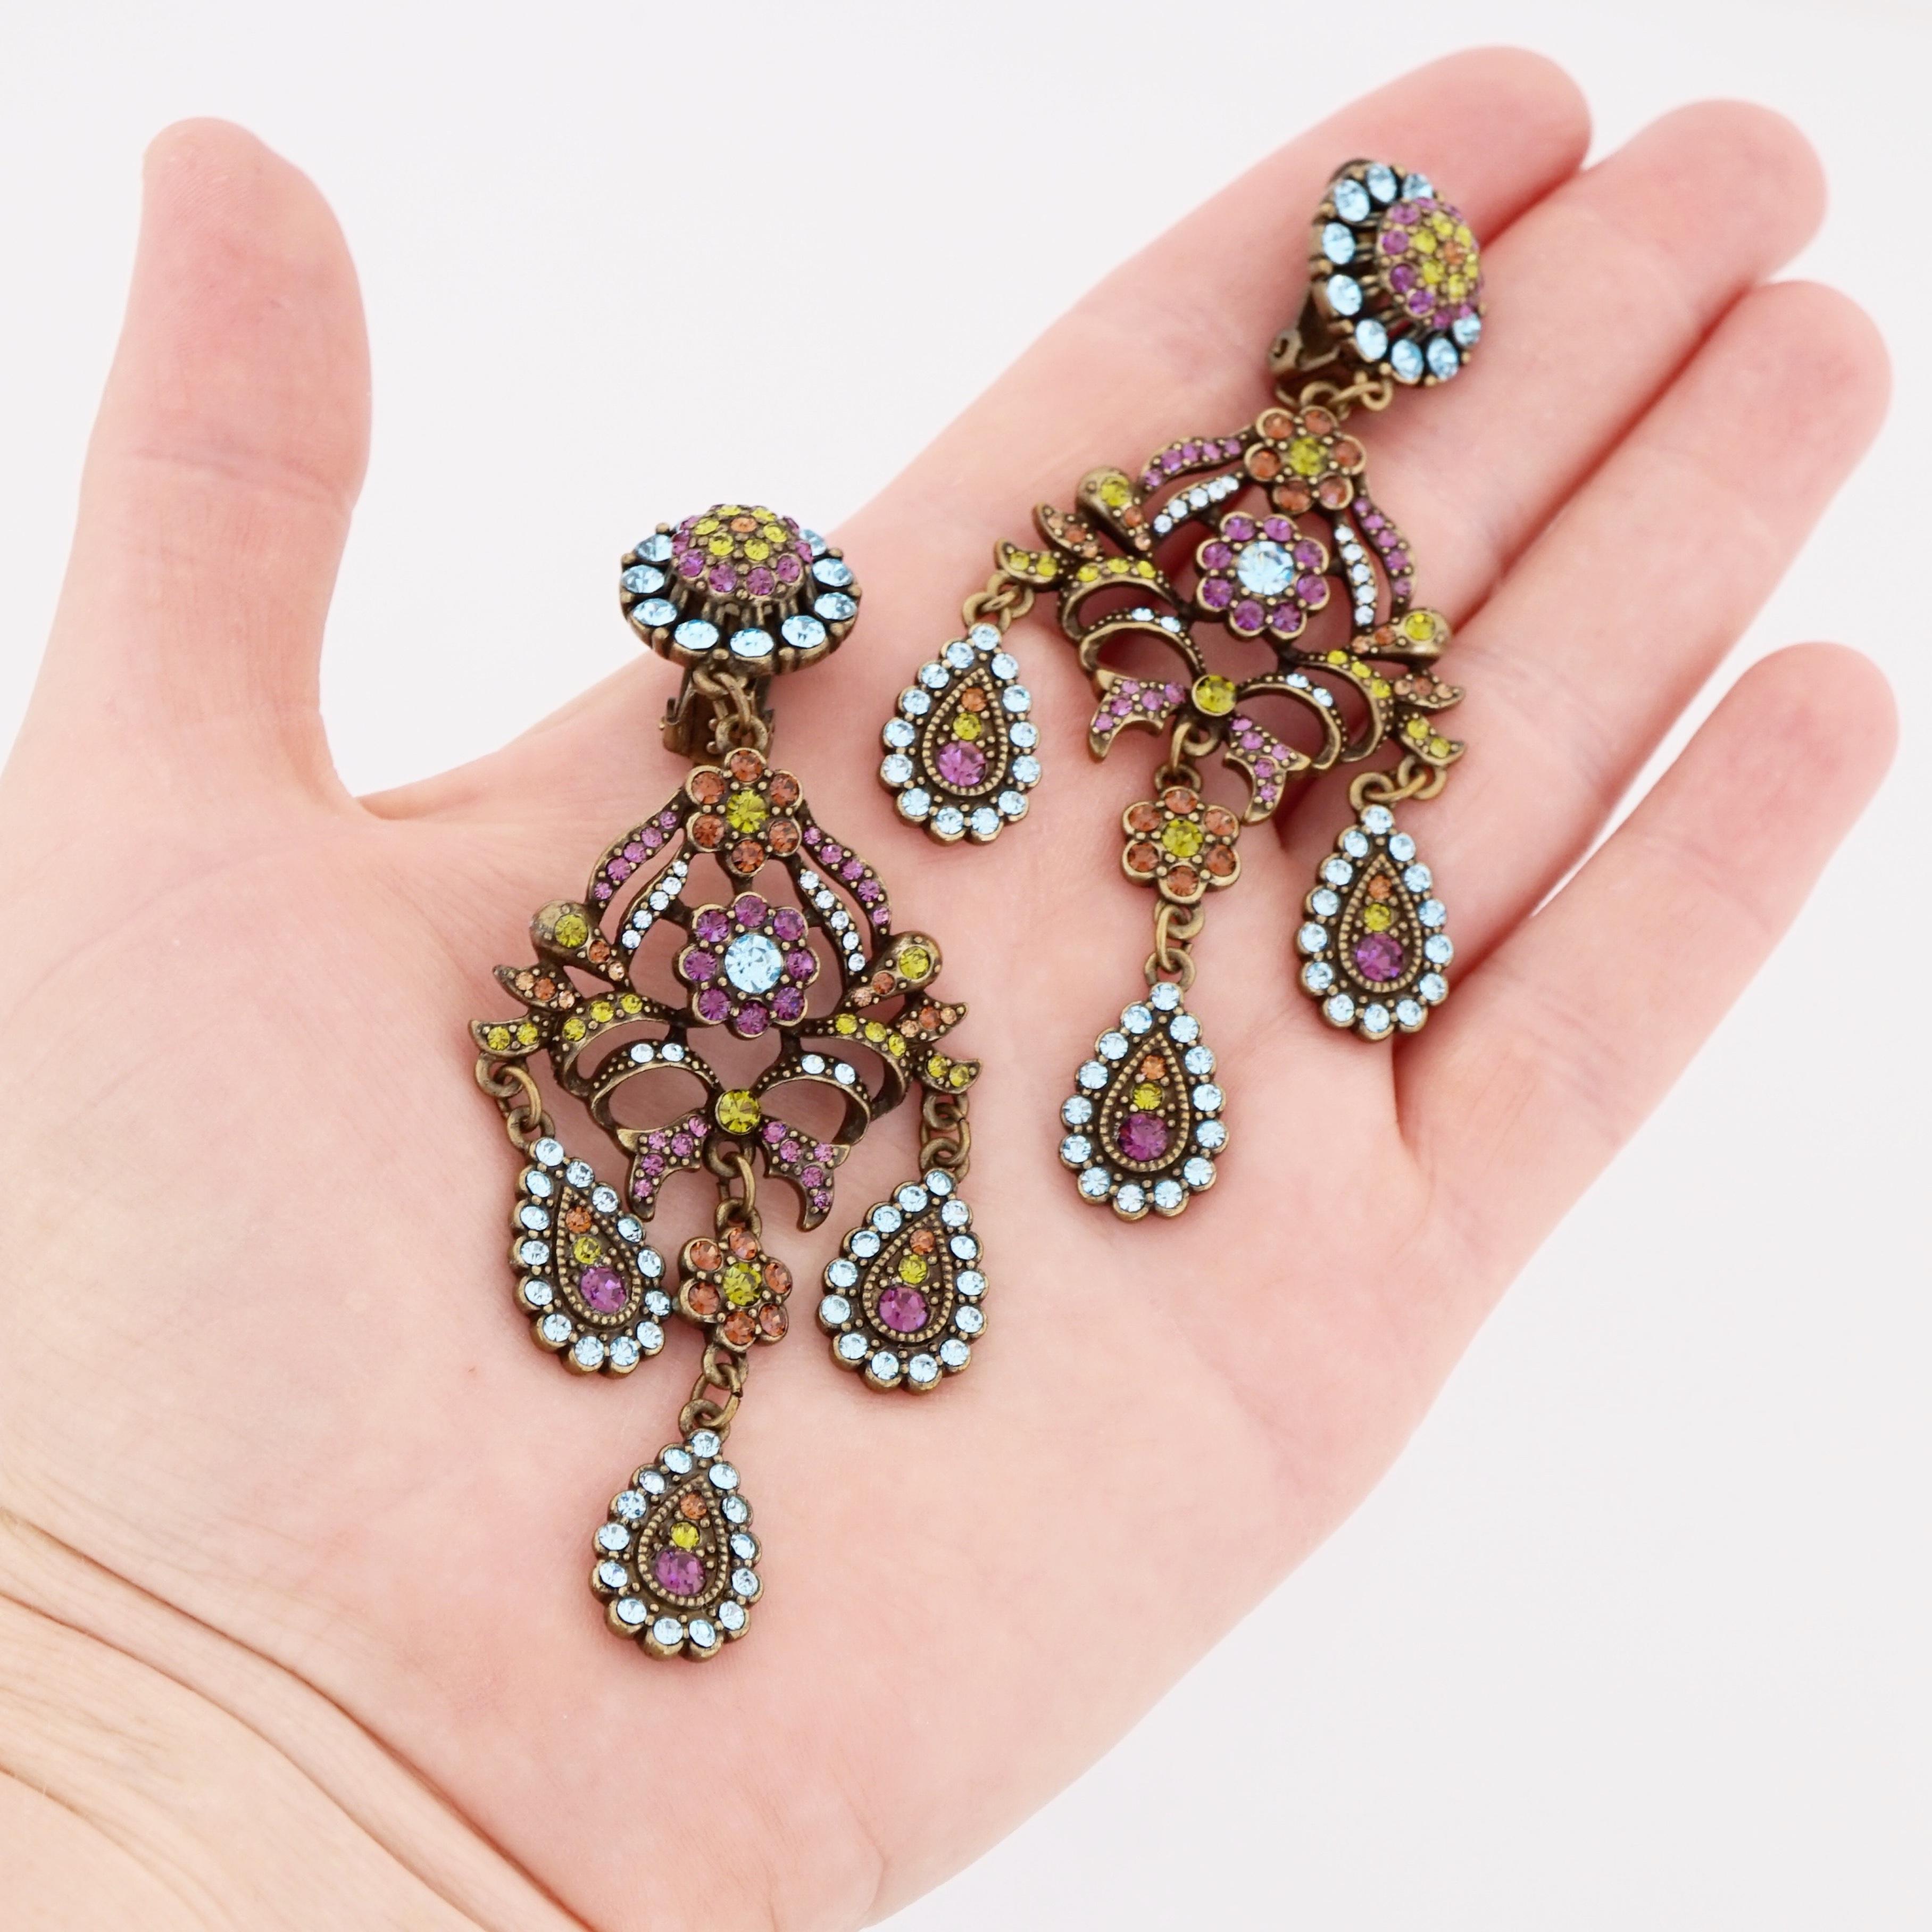 floral motif chandelier earrings diamond